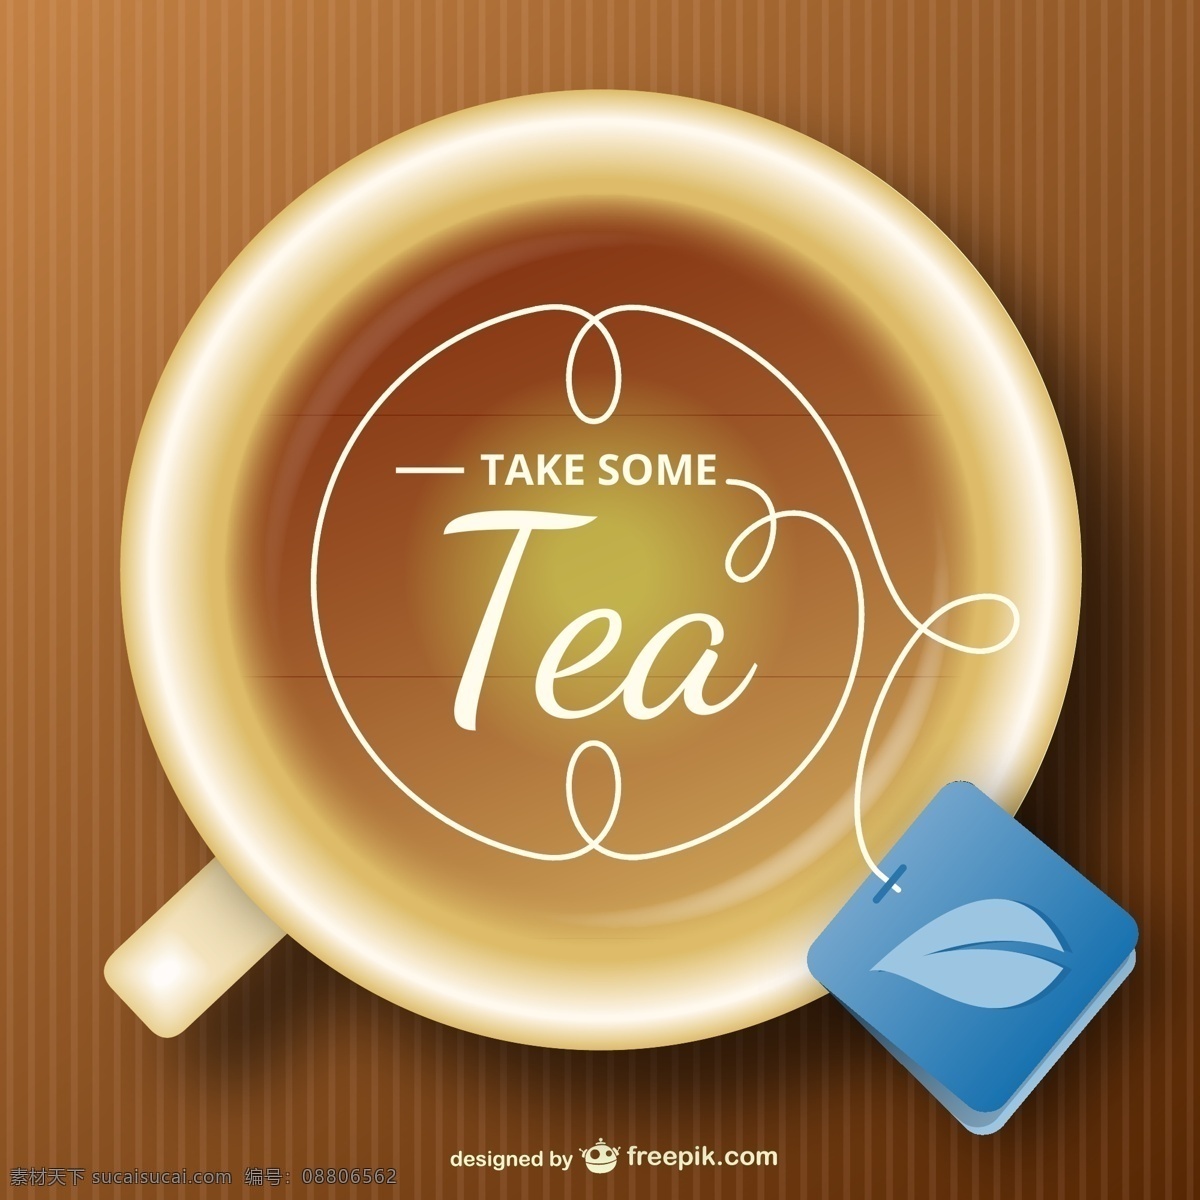 精美 茶杯 背景 eps格式 tea 茶包 矢量素材 矢量 矢量图 矢量人物